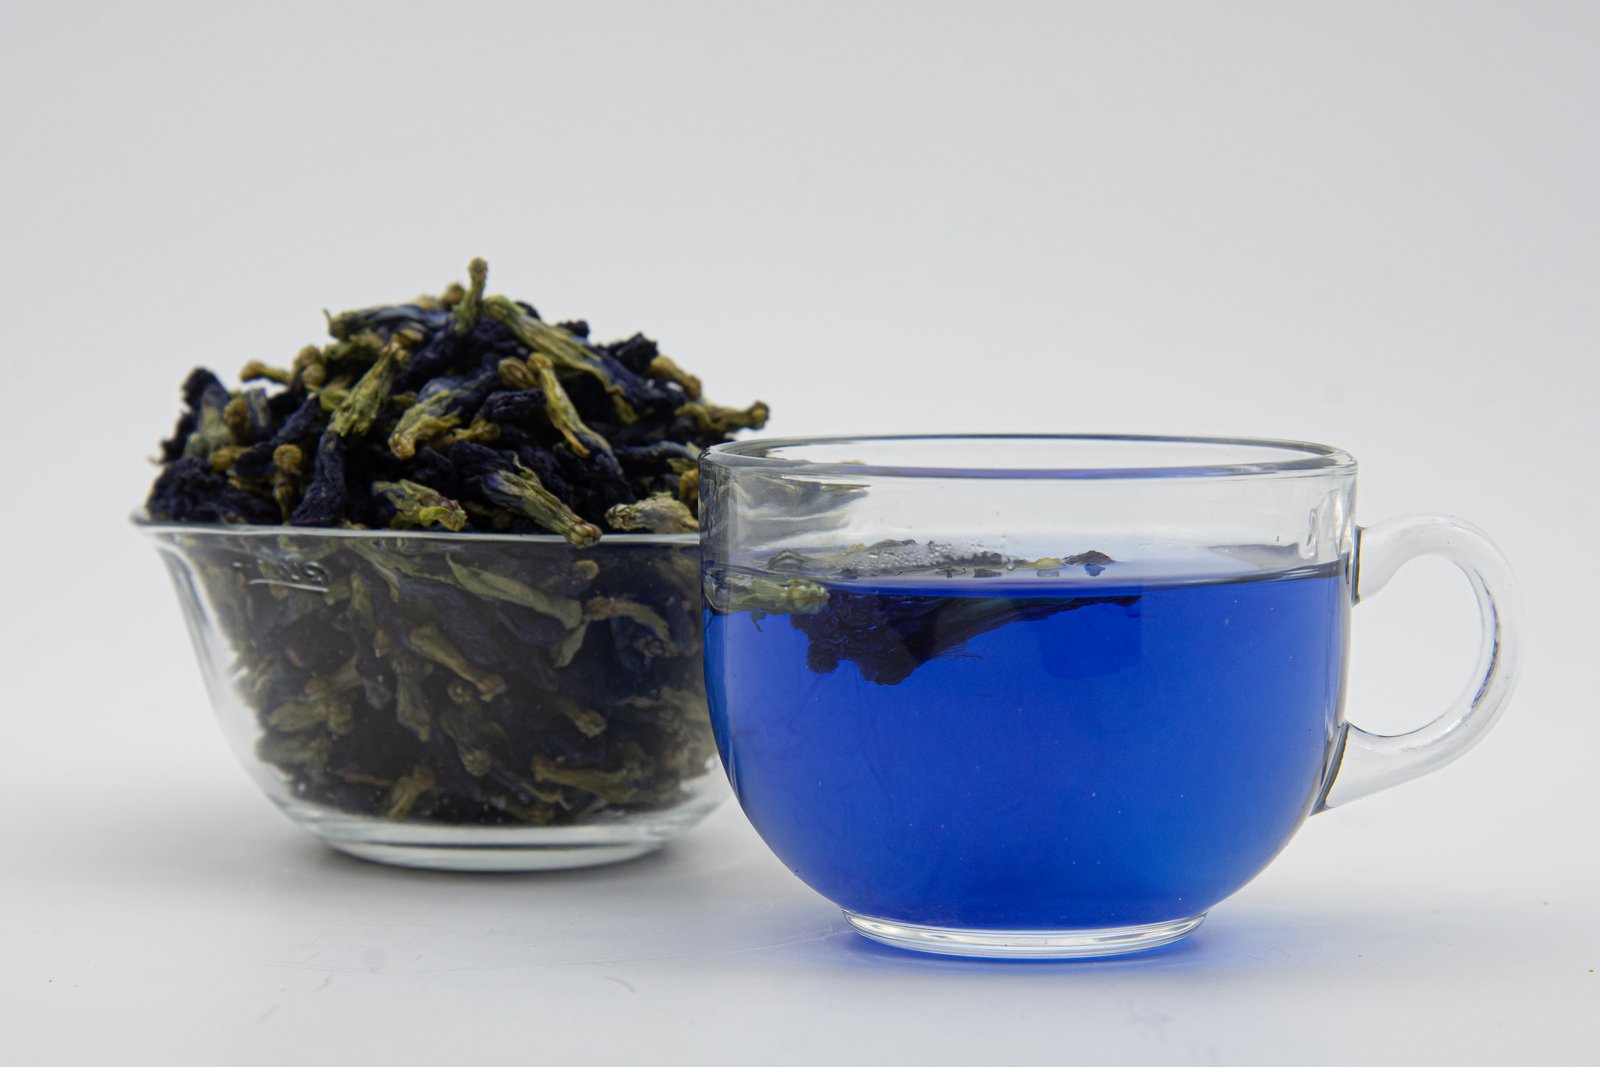 Product: Hillgreen Natural, Blue Pea Tea, 25g